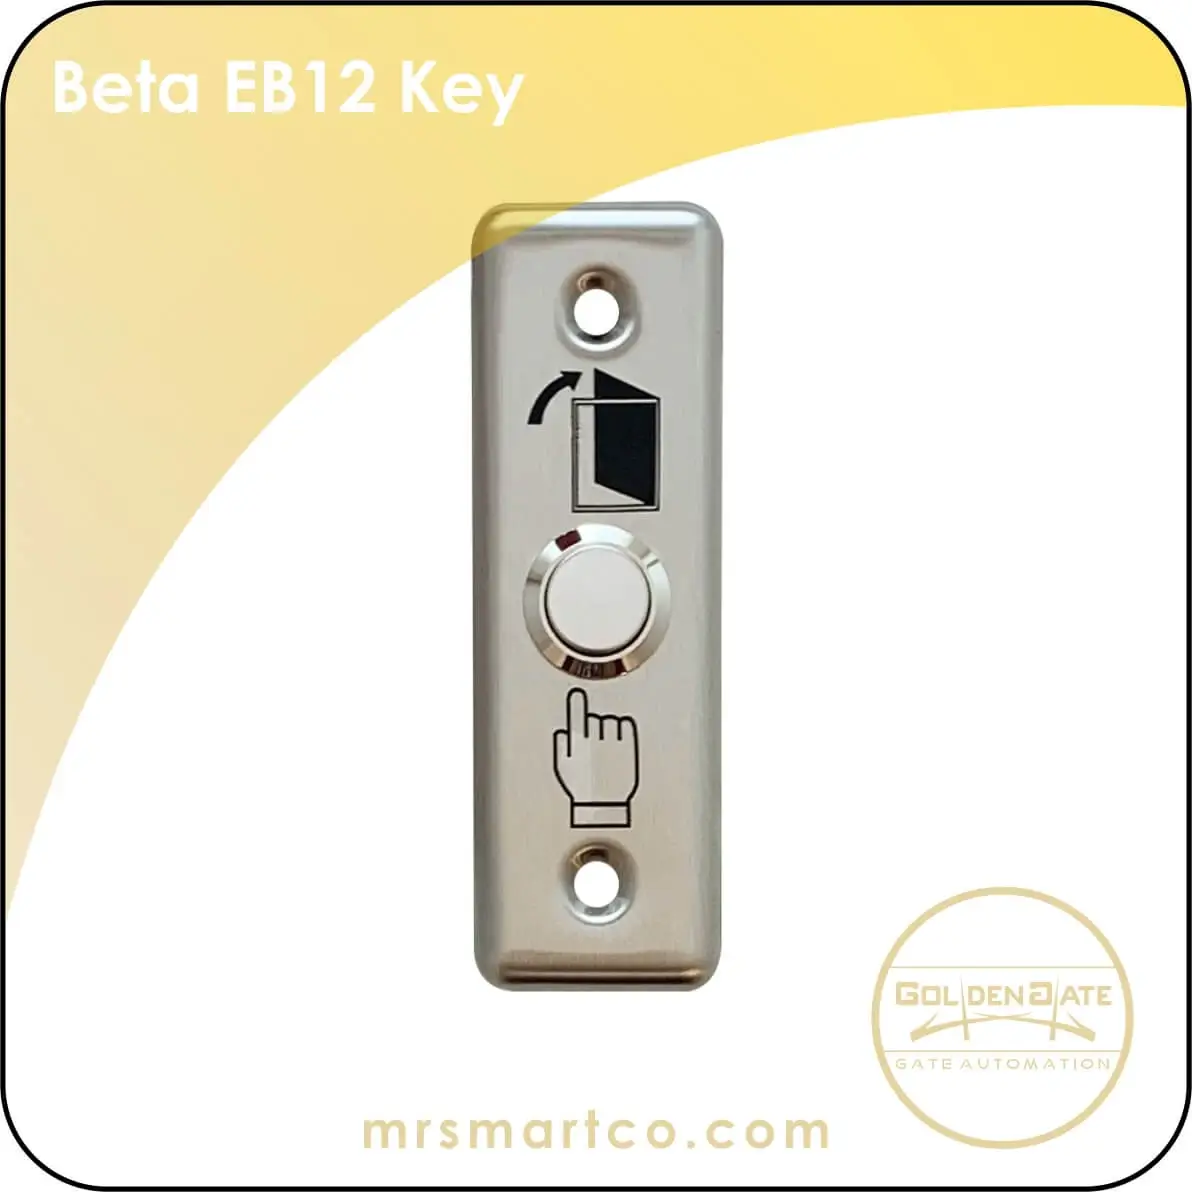 Beta EB12 Key